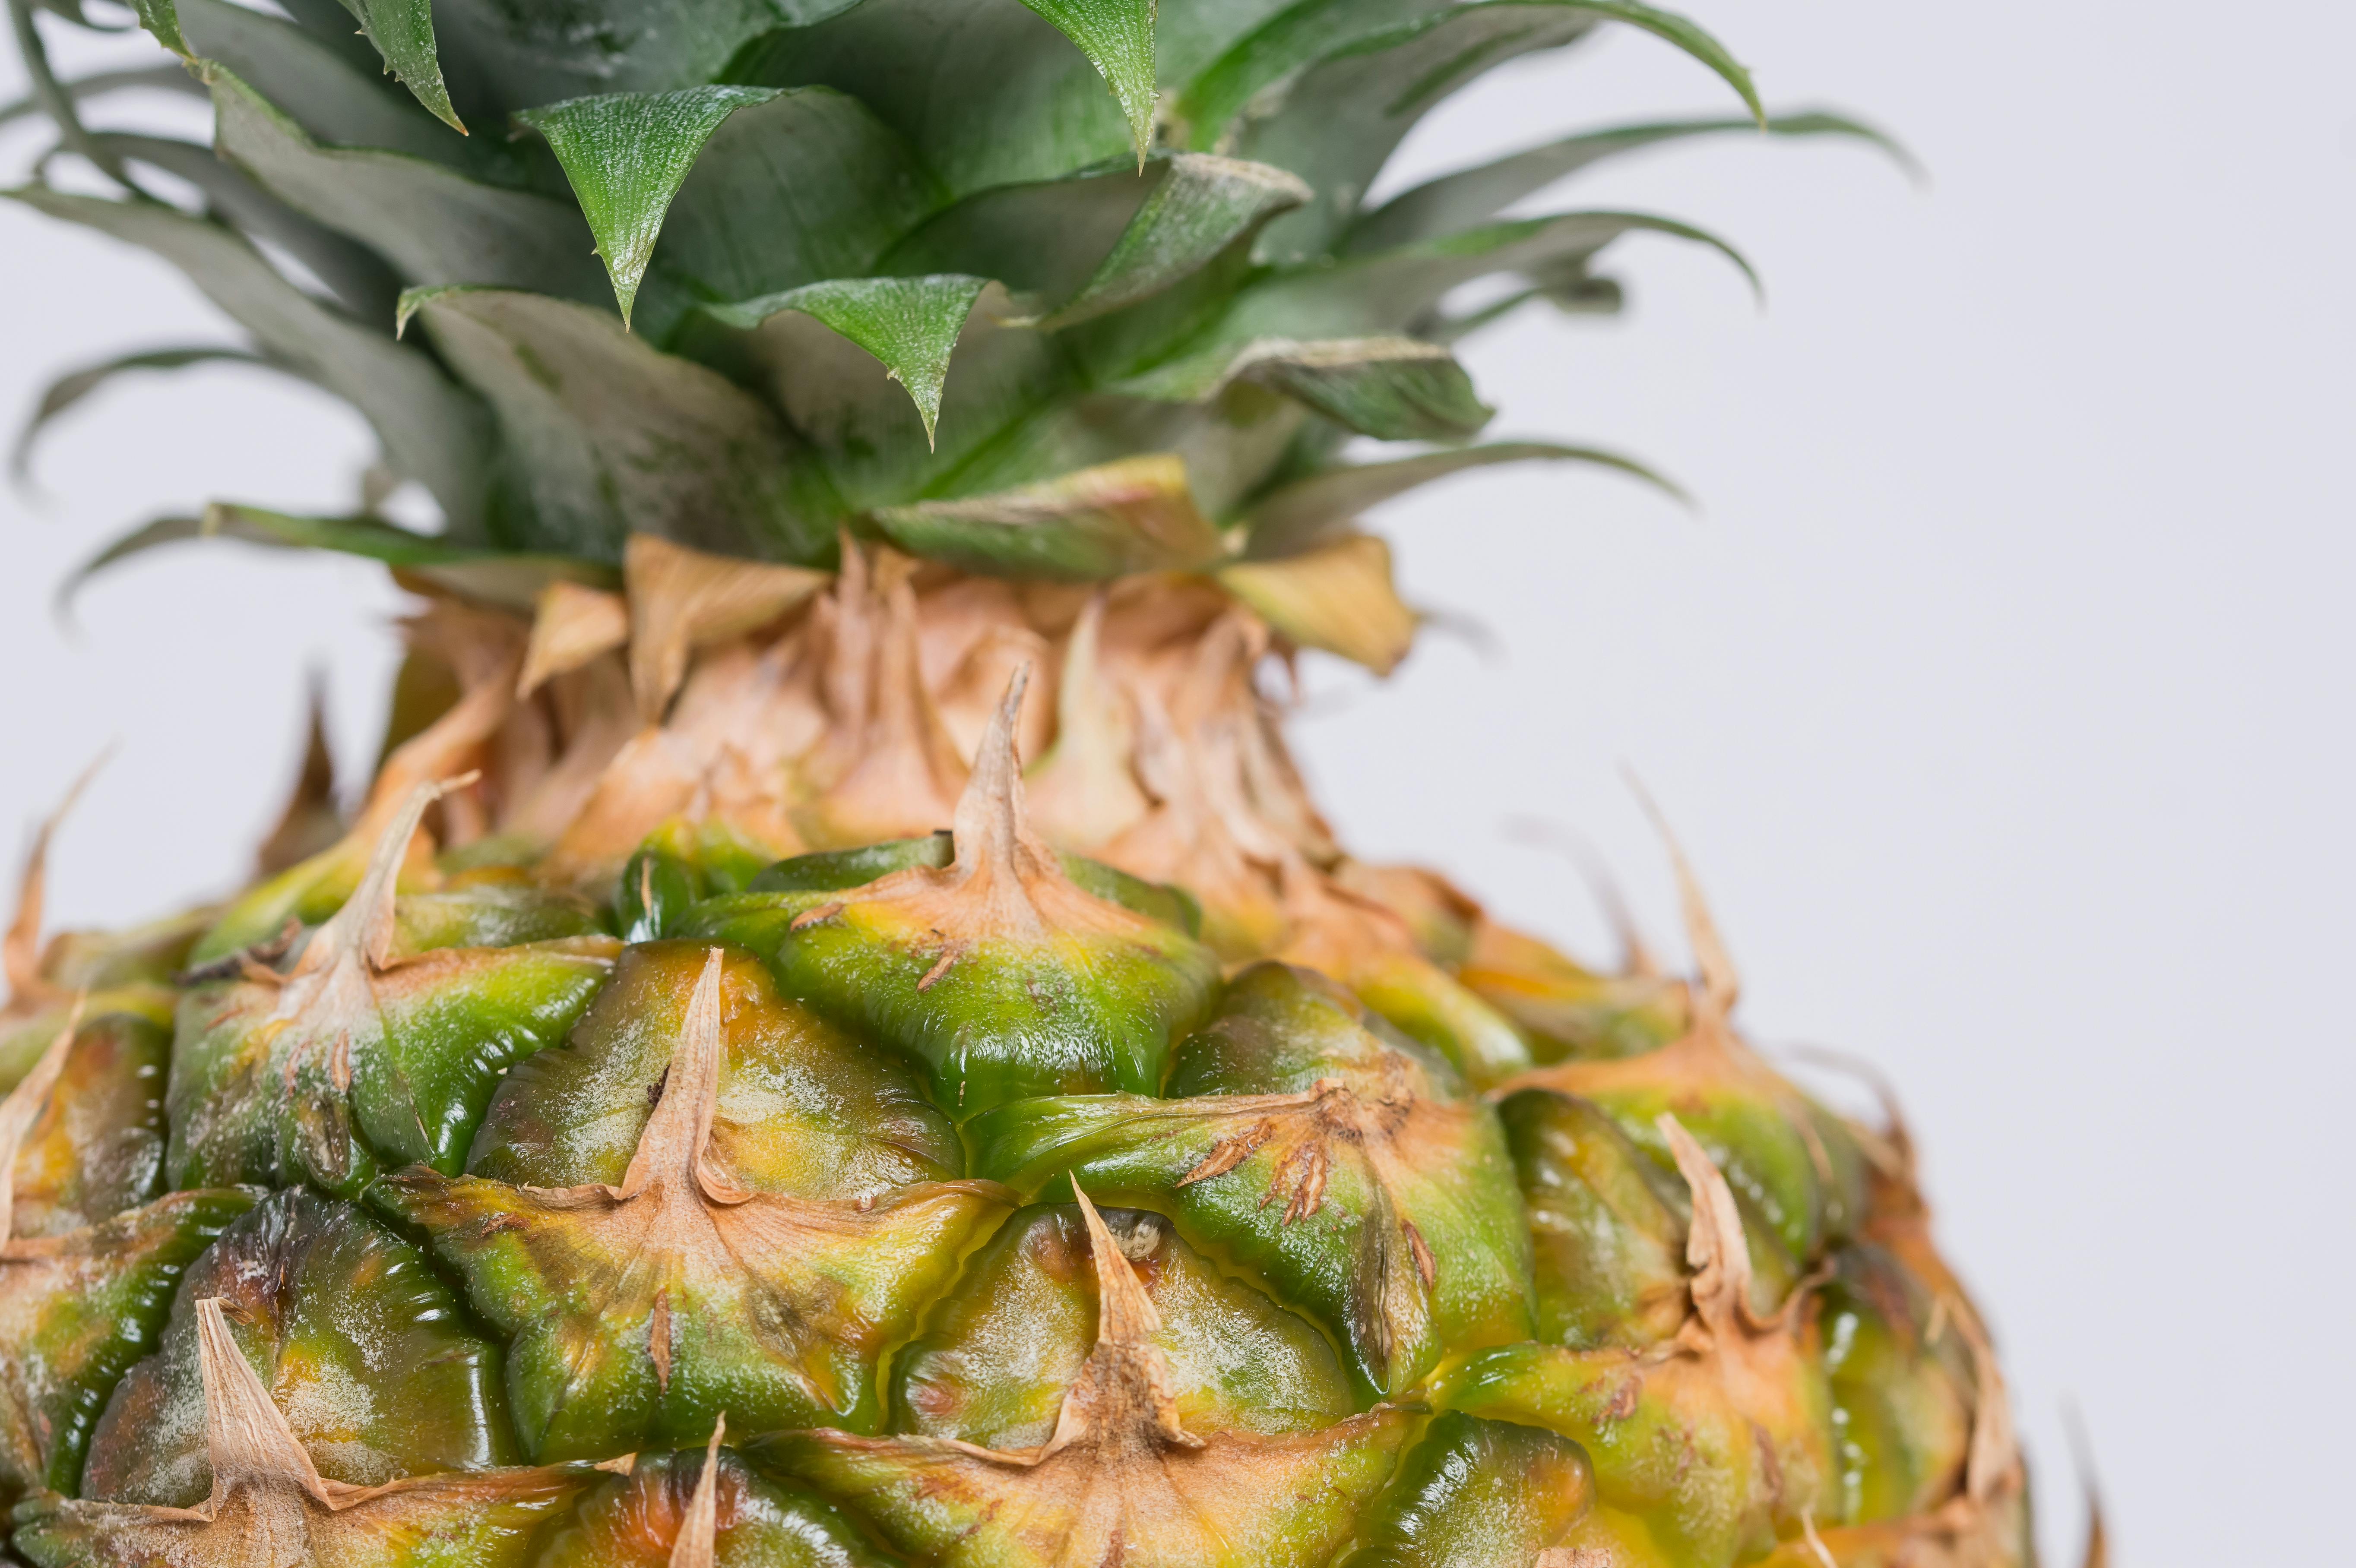 Kostenloses Foto zum Thema: ananas, frisches obst, frucht